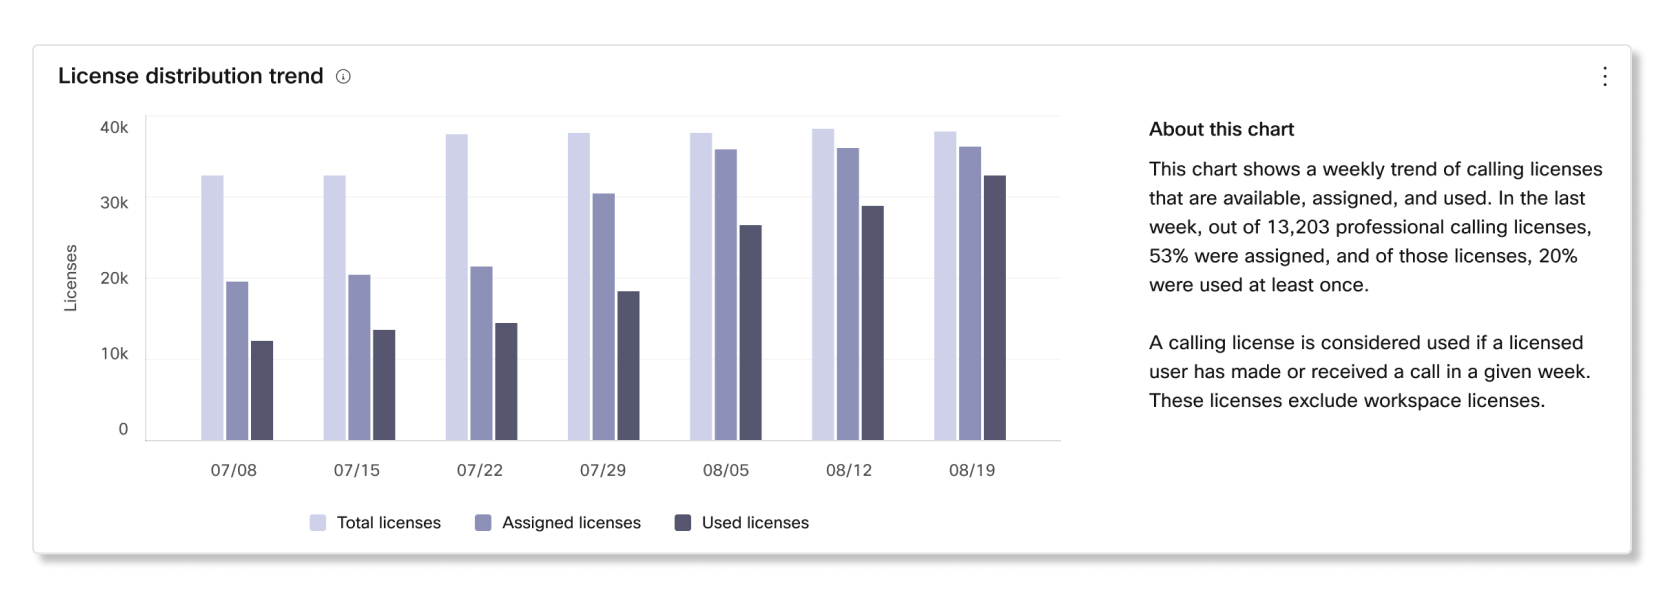 Partner Hub abonelikleri analizlerinde lisans dağıtımı trend grafiği